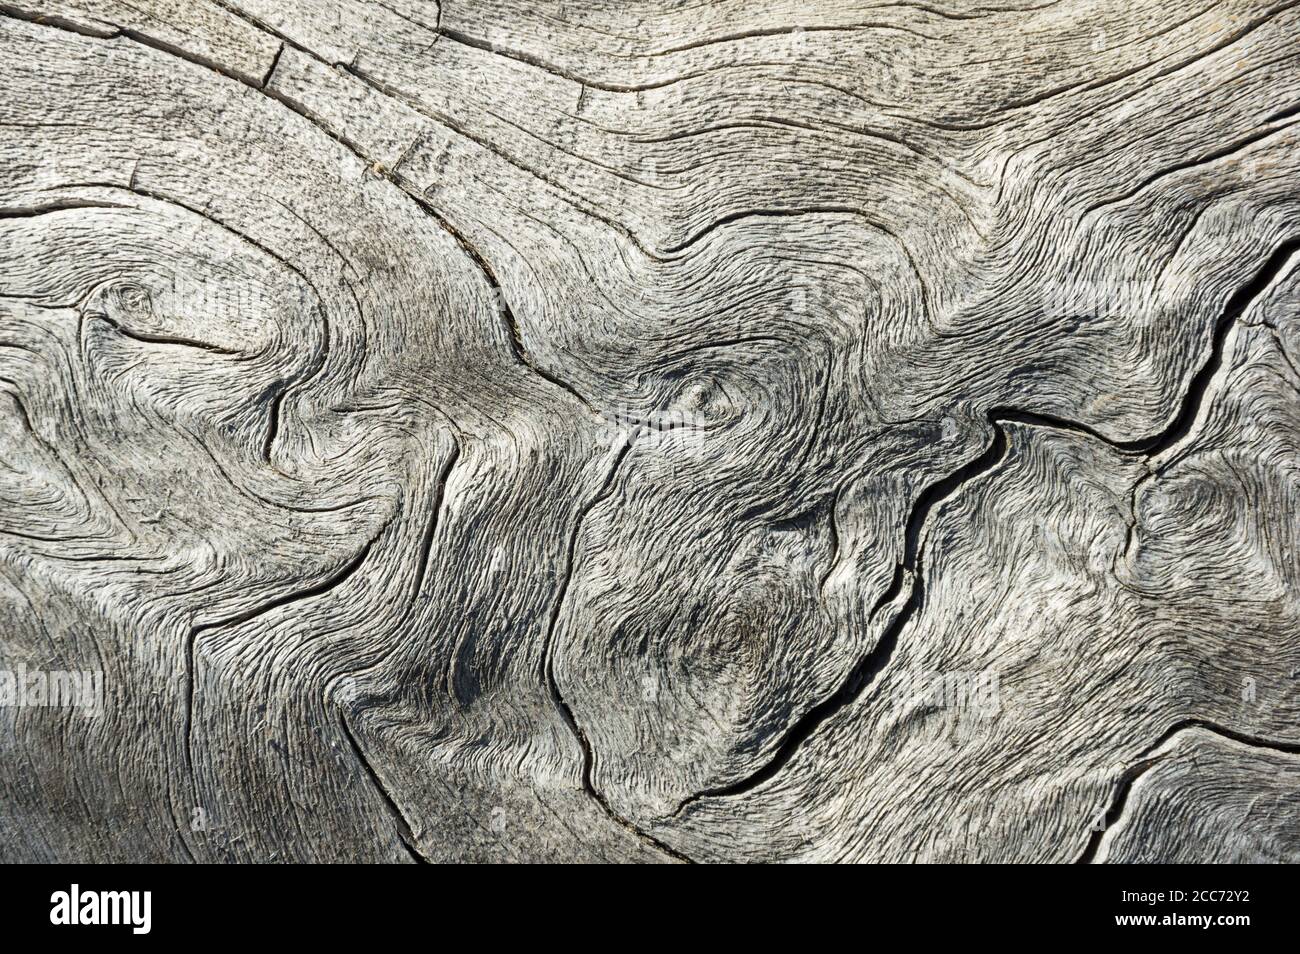 image de texture d'arrière-plan en bois gris contoré et abîmé Banque D'Images